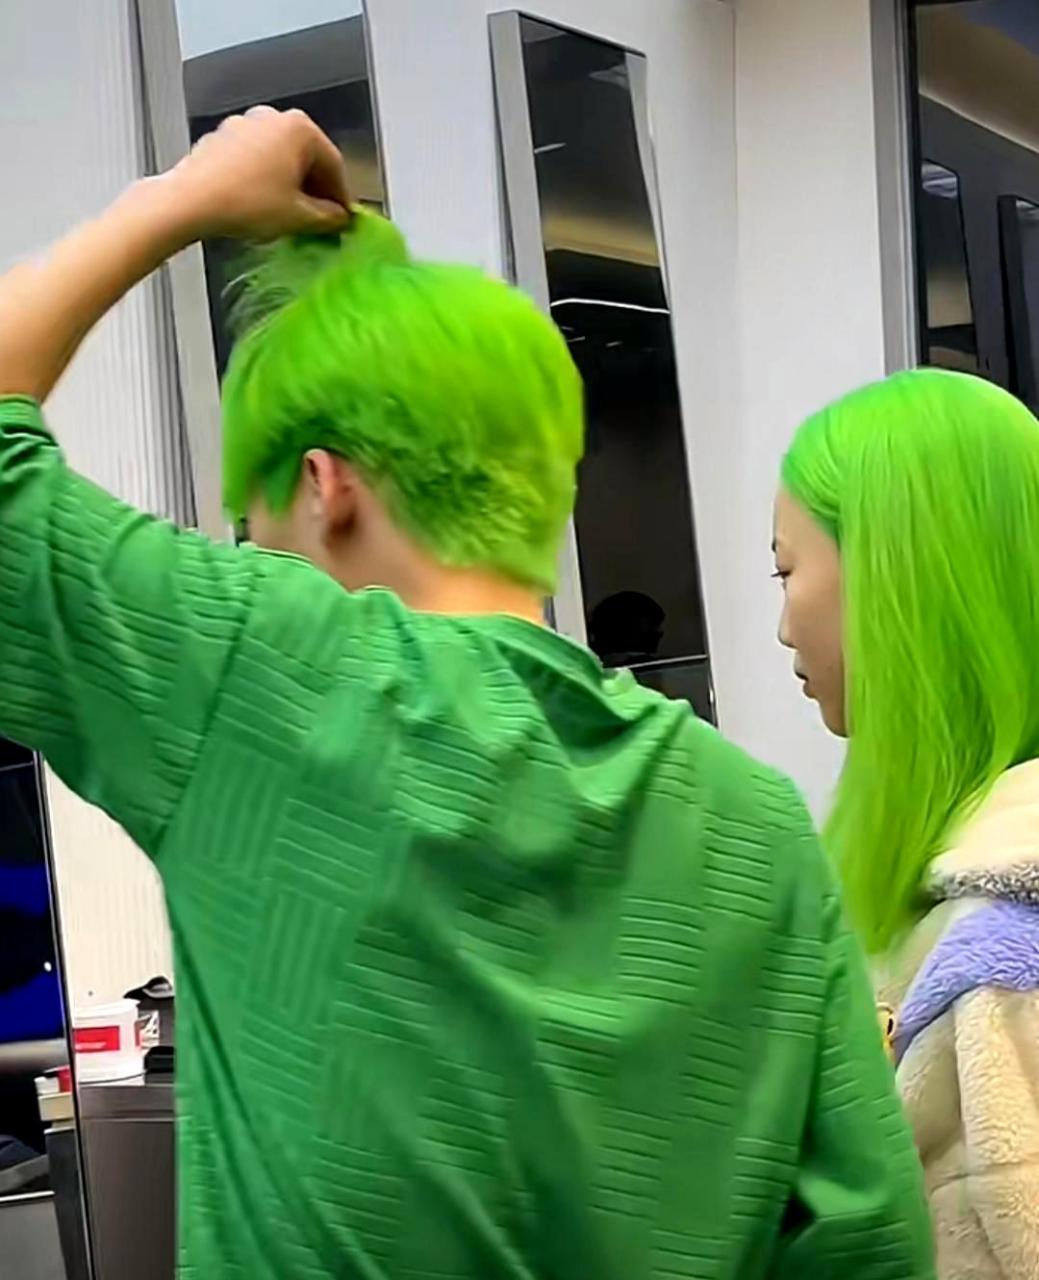 荧光绿色的发色让这对情侣看起来非常出彩!